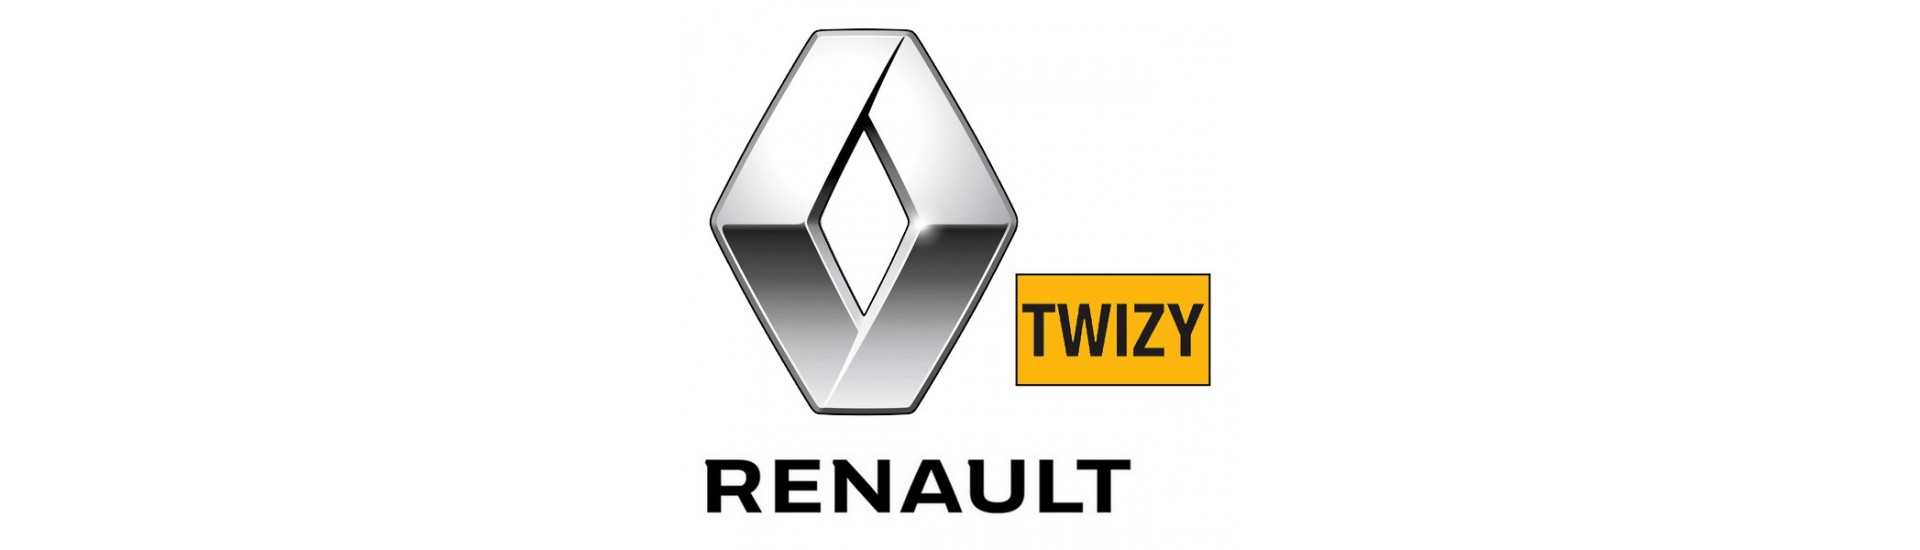 Melhor volante preço sem autorização Renault Twizy